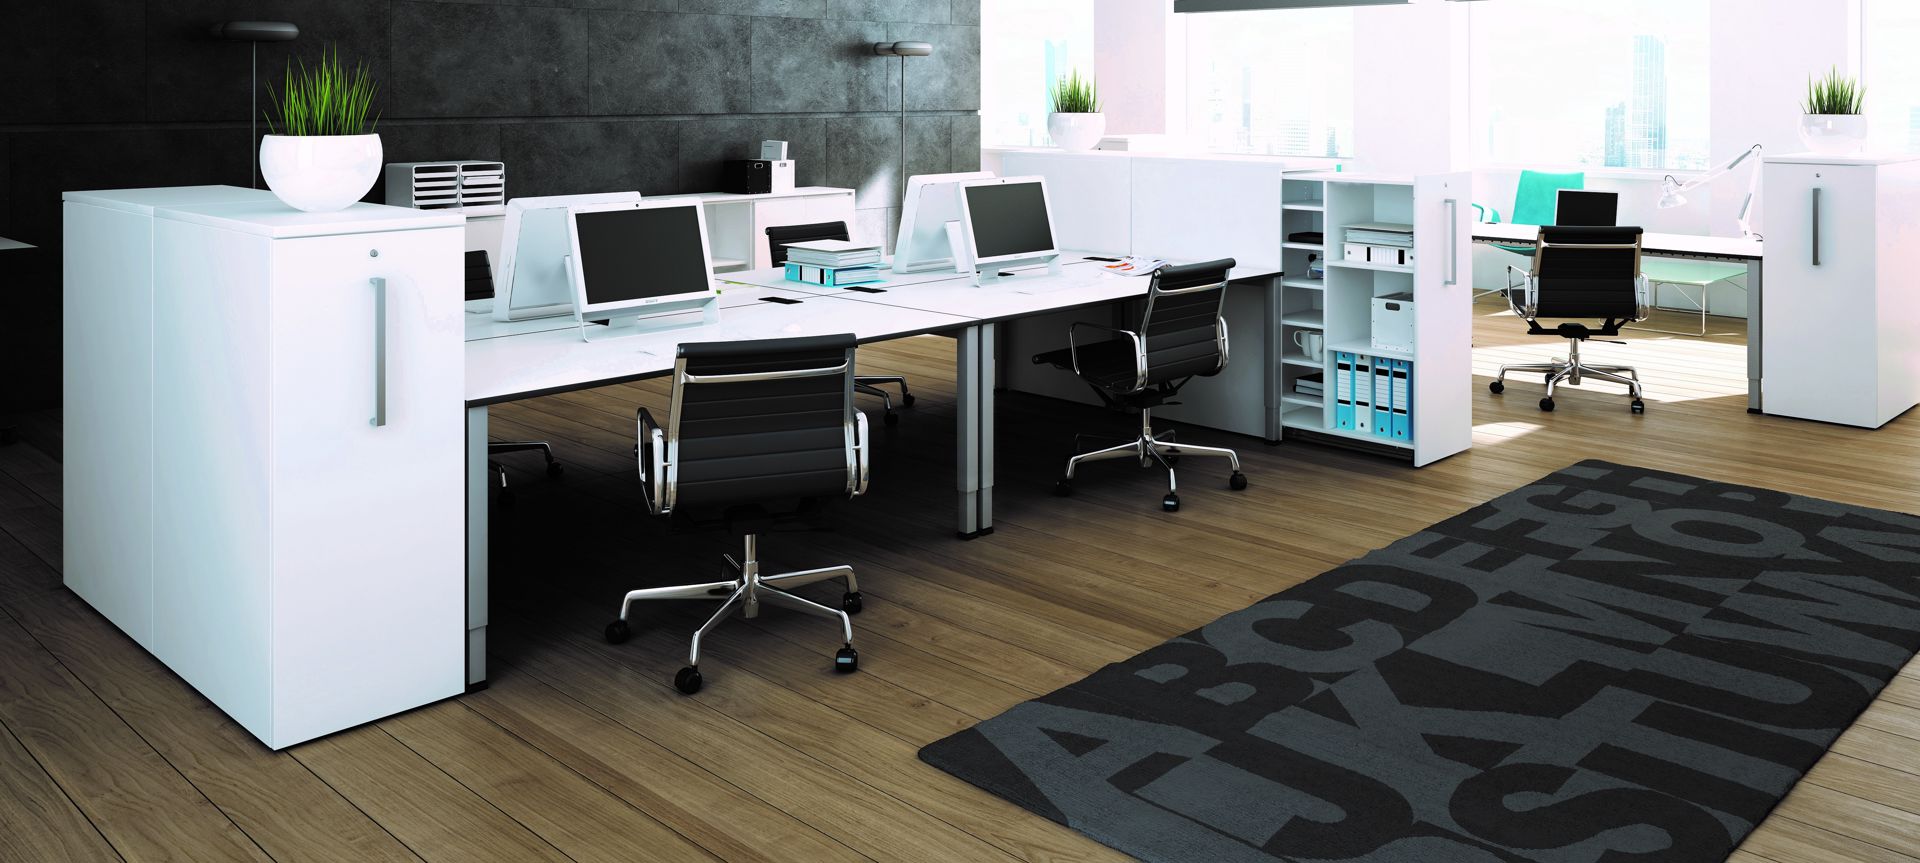 OKA Simply Schreibtisch Einzelarbeitsplatz, Team-Zone, Besprechung, Arbeitsplatz